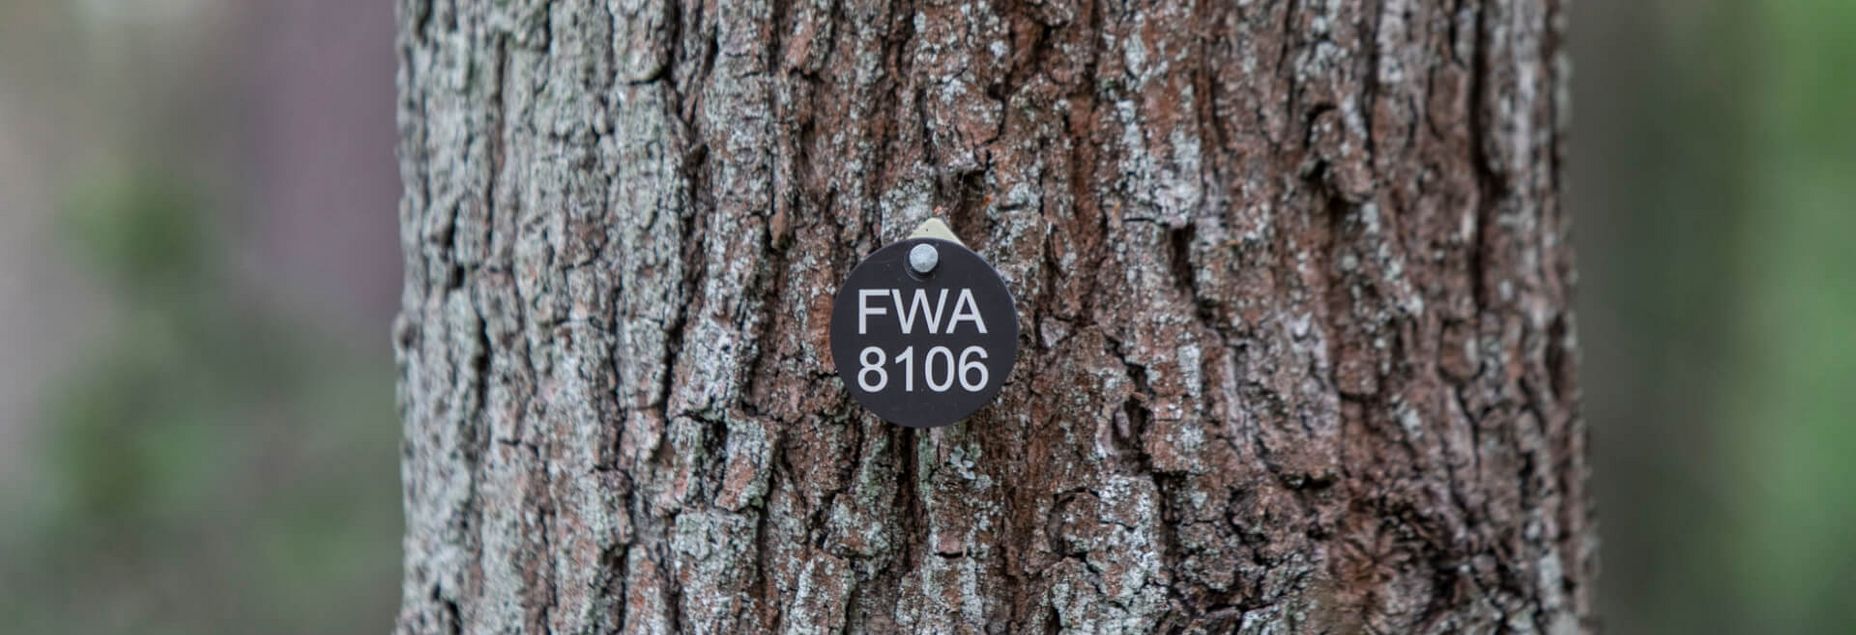 FriedWald-Onlineshop FWA 8106